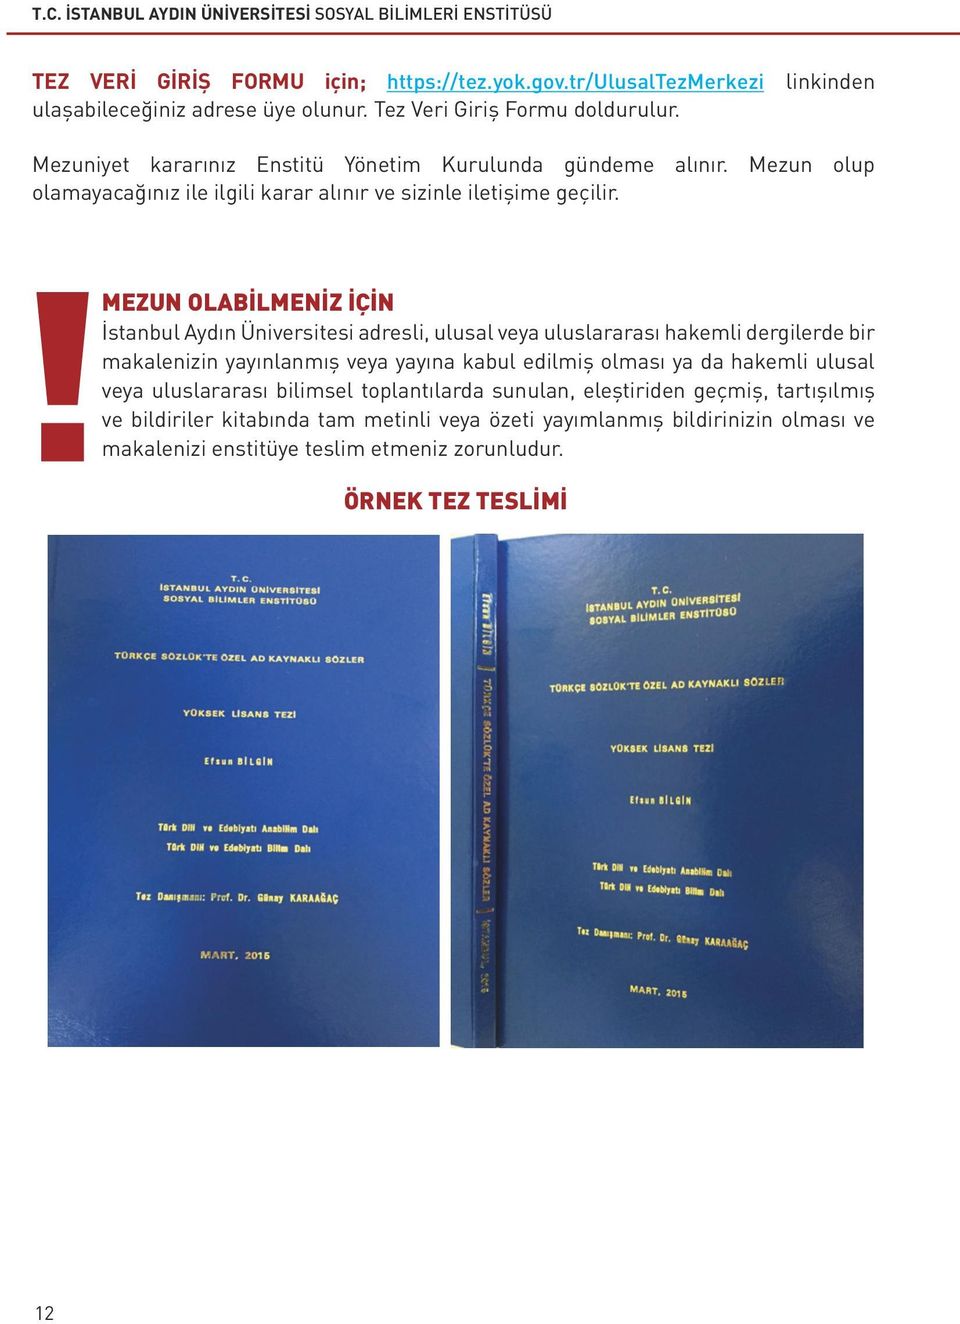 MEZUN OLABİLMENİZ İÇİN İstanbul Aydın Üniversitesi adresli, ulusal veya uluslararası hakemli dergilerde bir makalenizin yayınlanmış veya yayına kabul edilmiş olması ya da hakemli ulusal veya